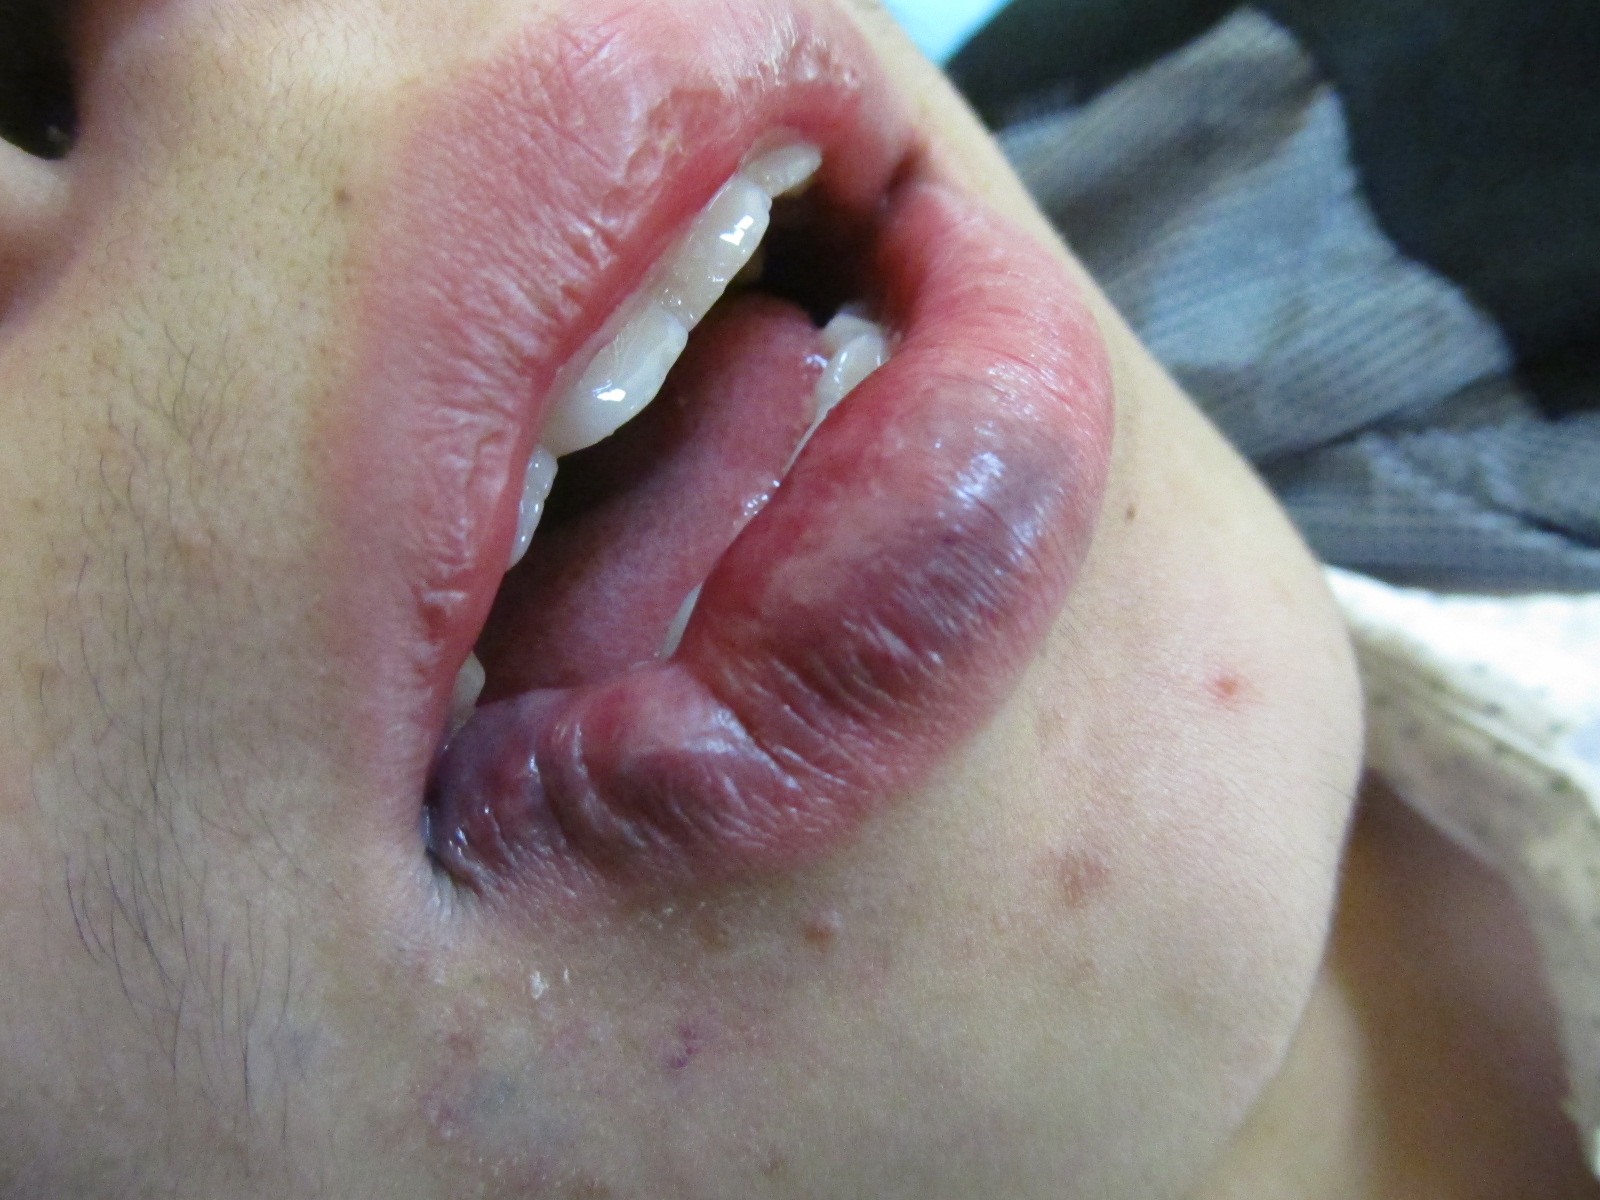 成人嘴唇血管瘤图片